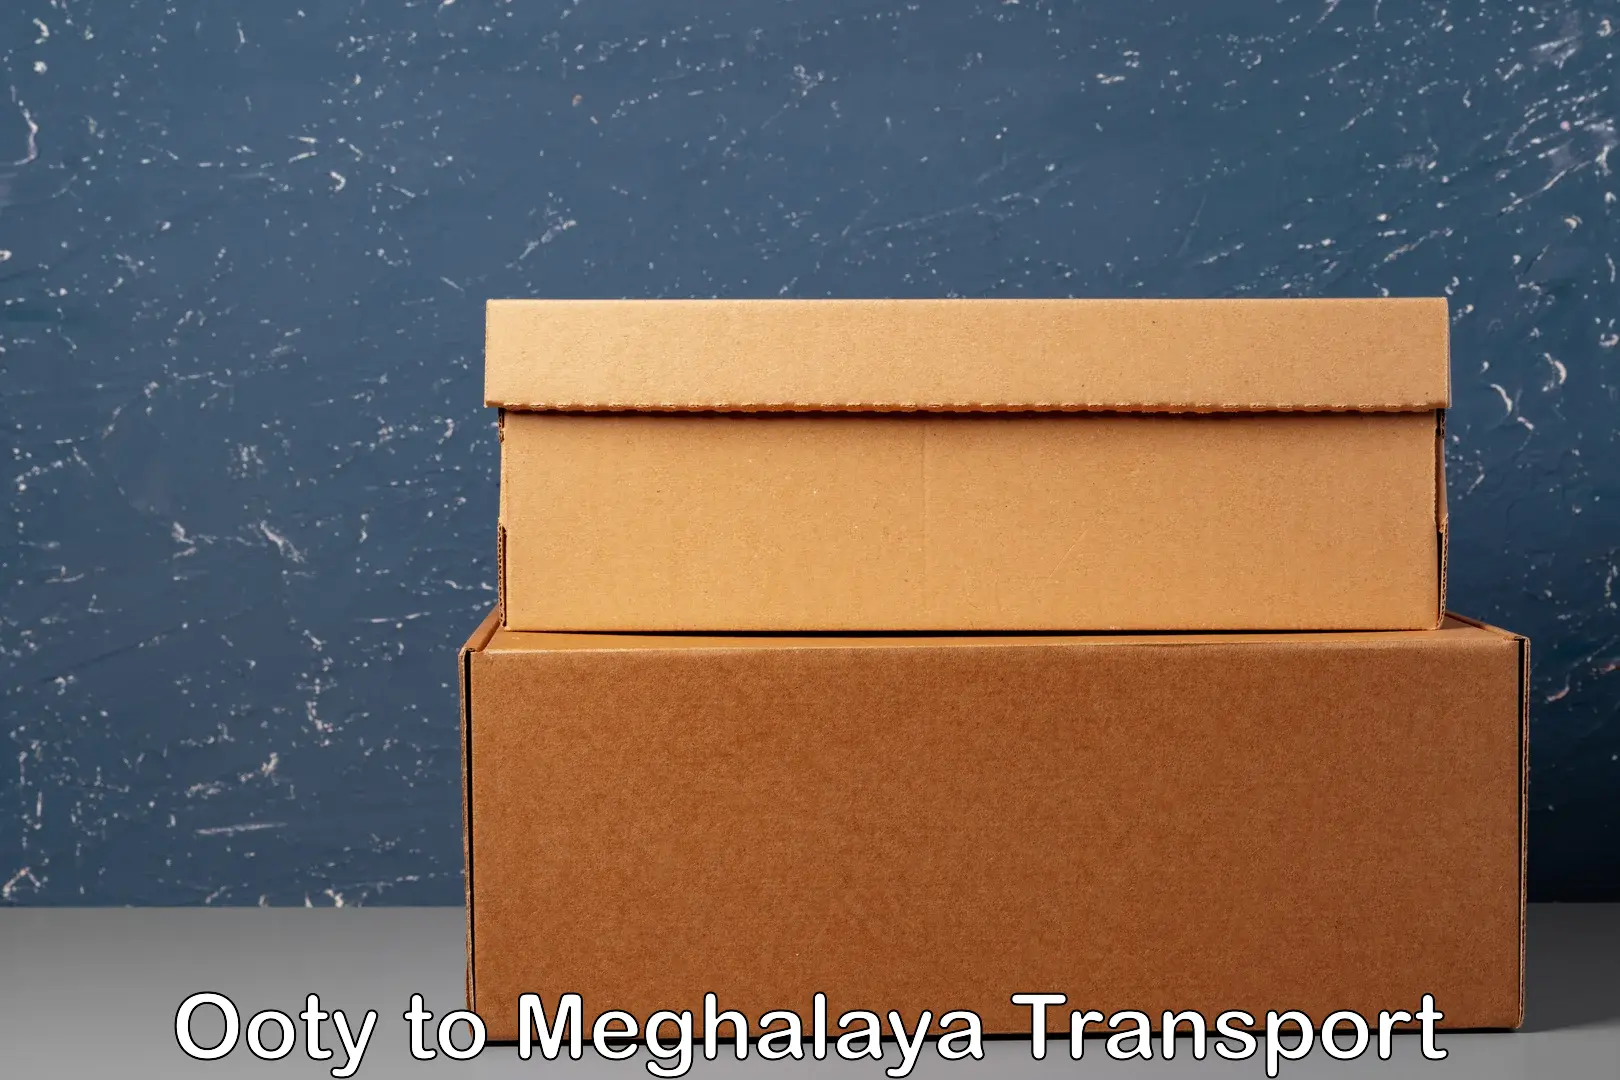 Online transport service Ooty to Jowai